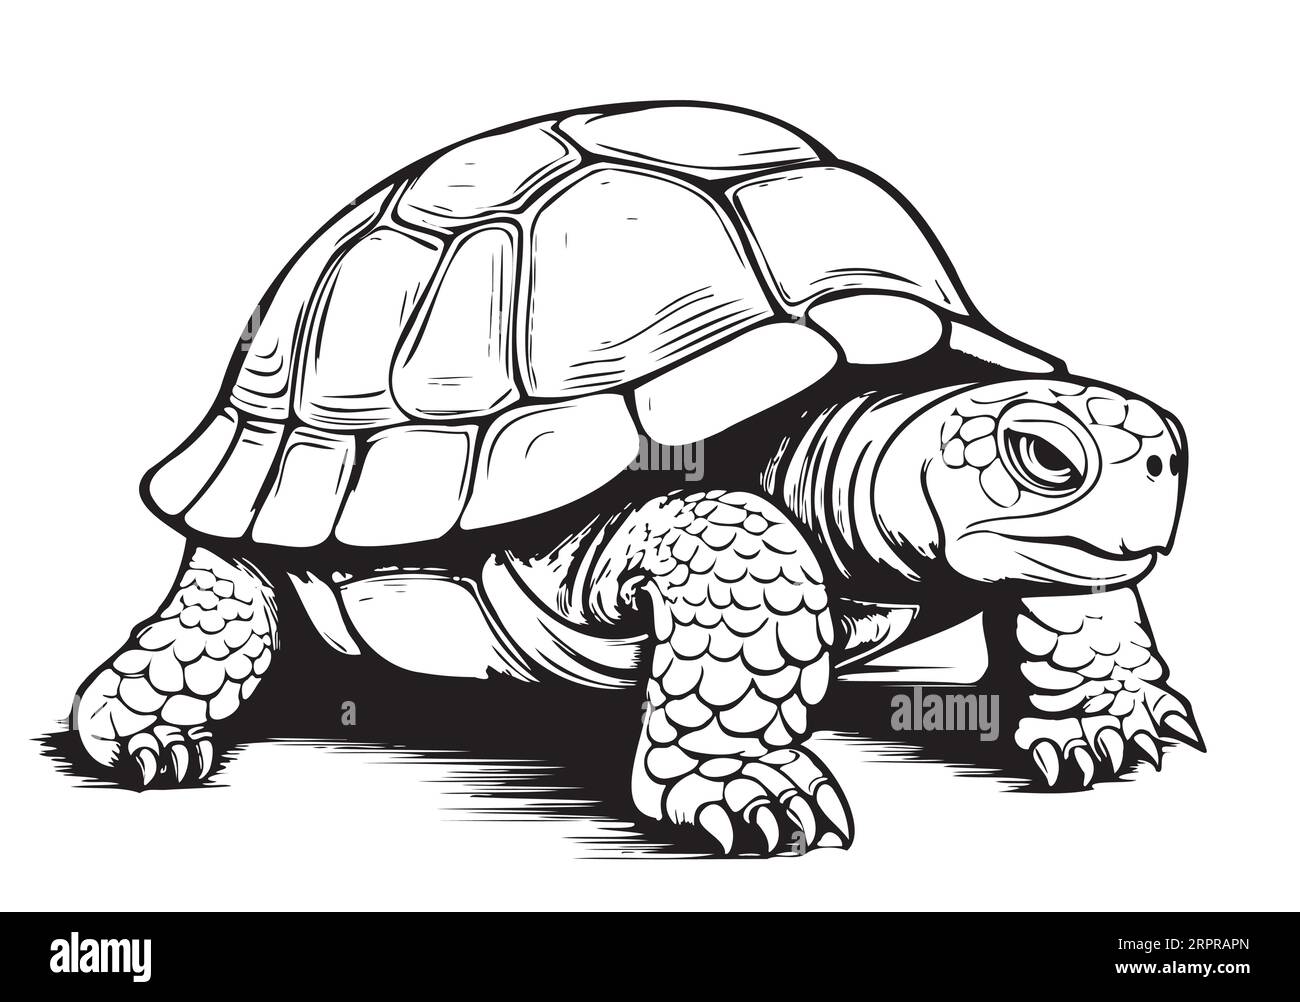 Croquis de reptile de tortue terrestre dessiné à la main dans le vecteur graphique Illustration de Vecteur